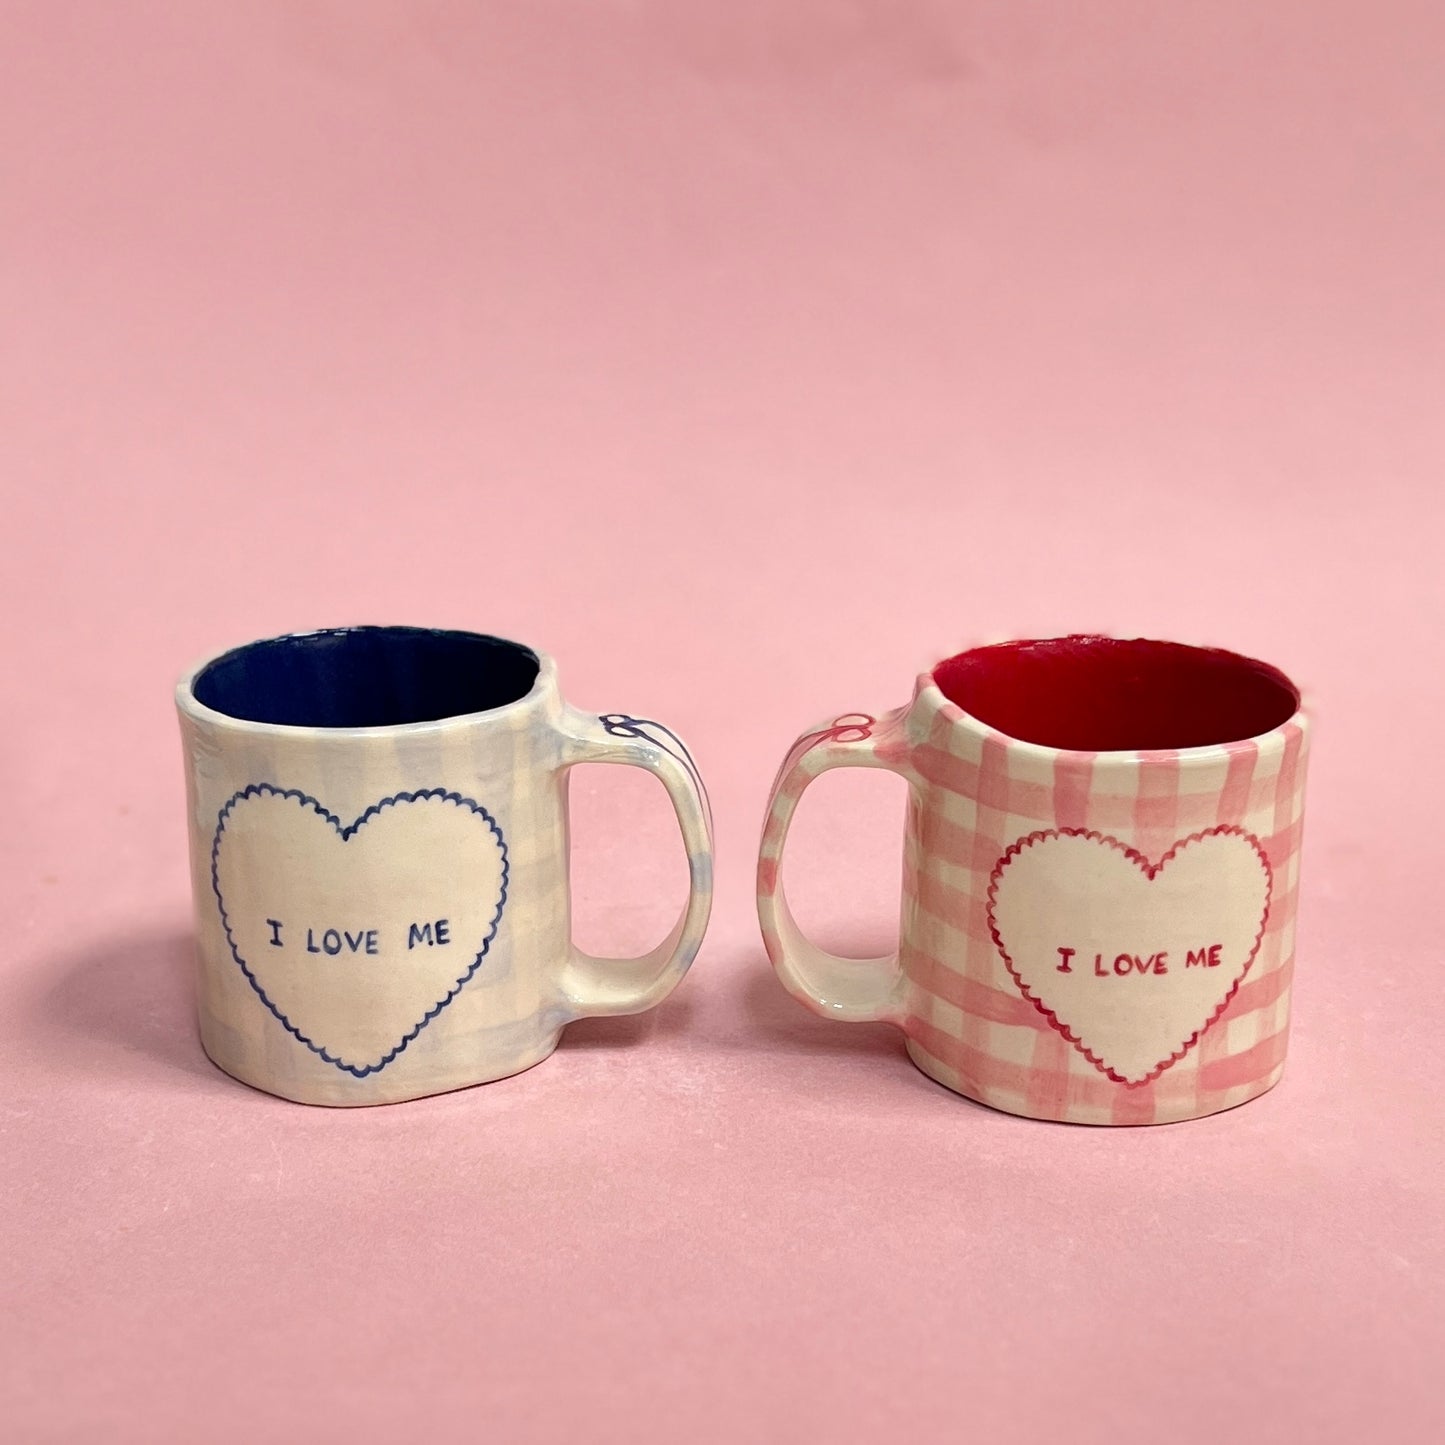 "I LOVE ME" Mugs